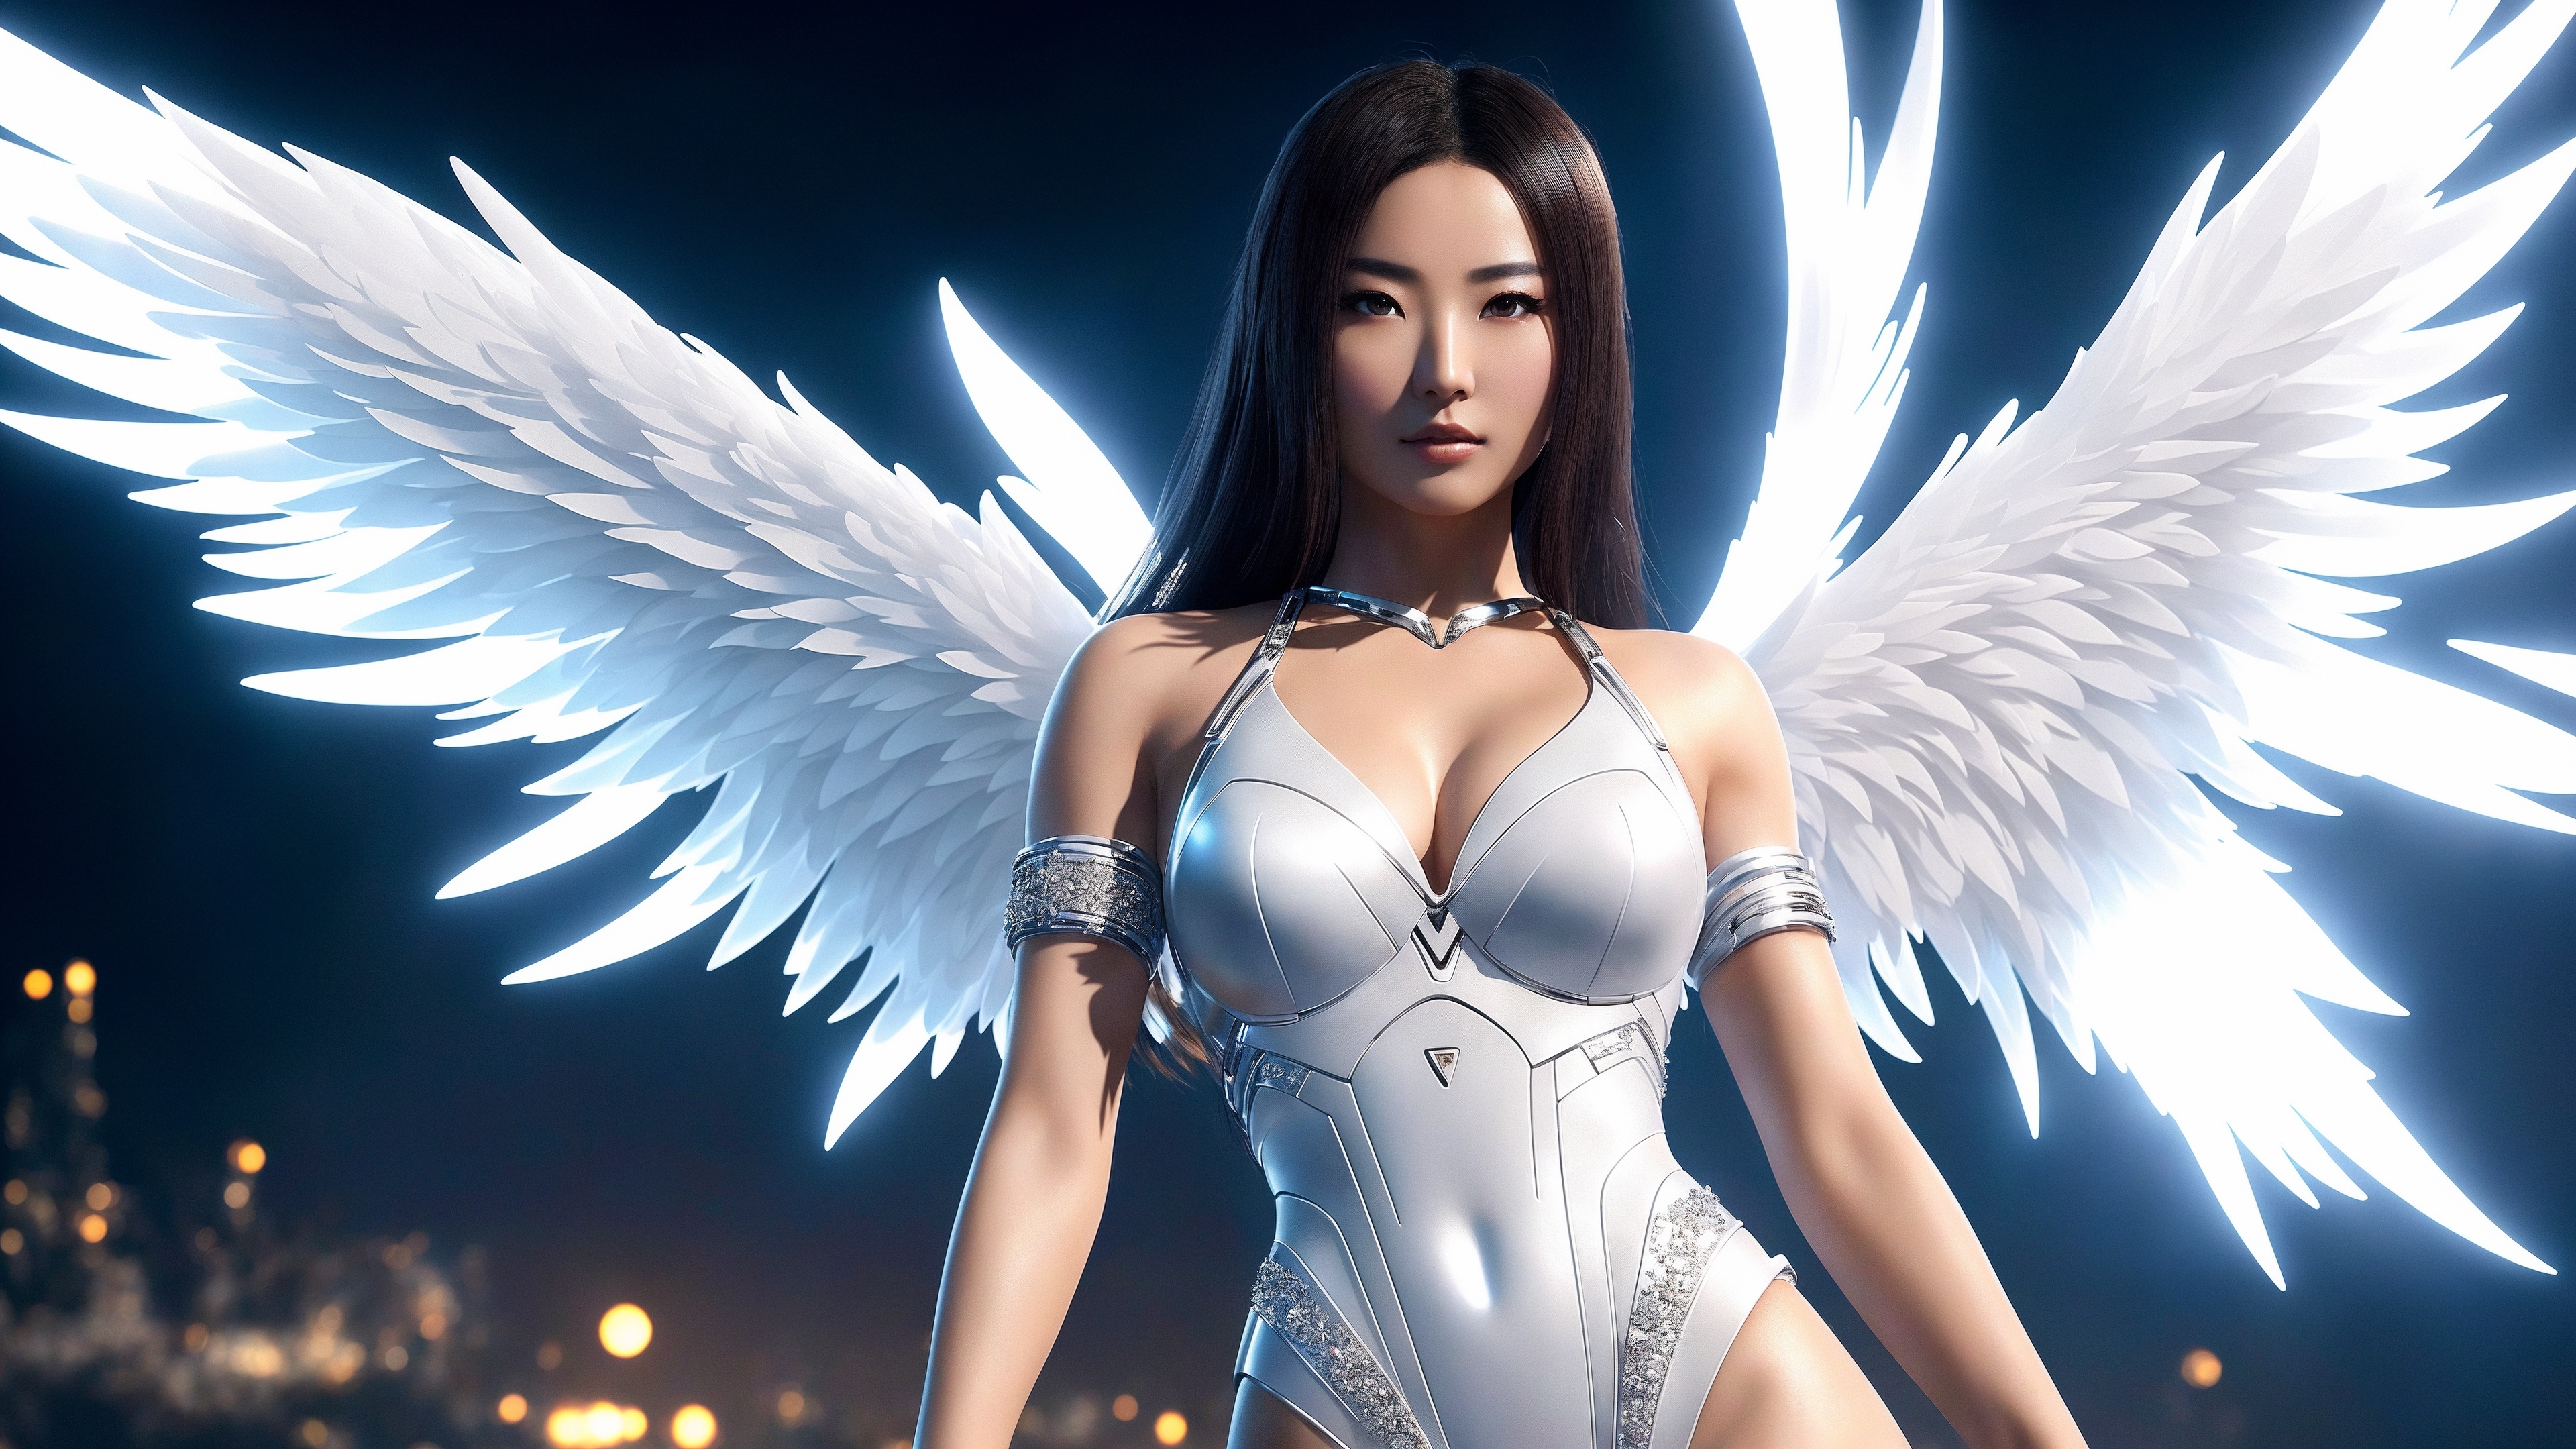 Ангел с азиатской внешностью